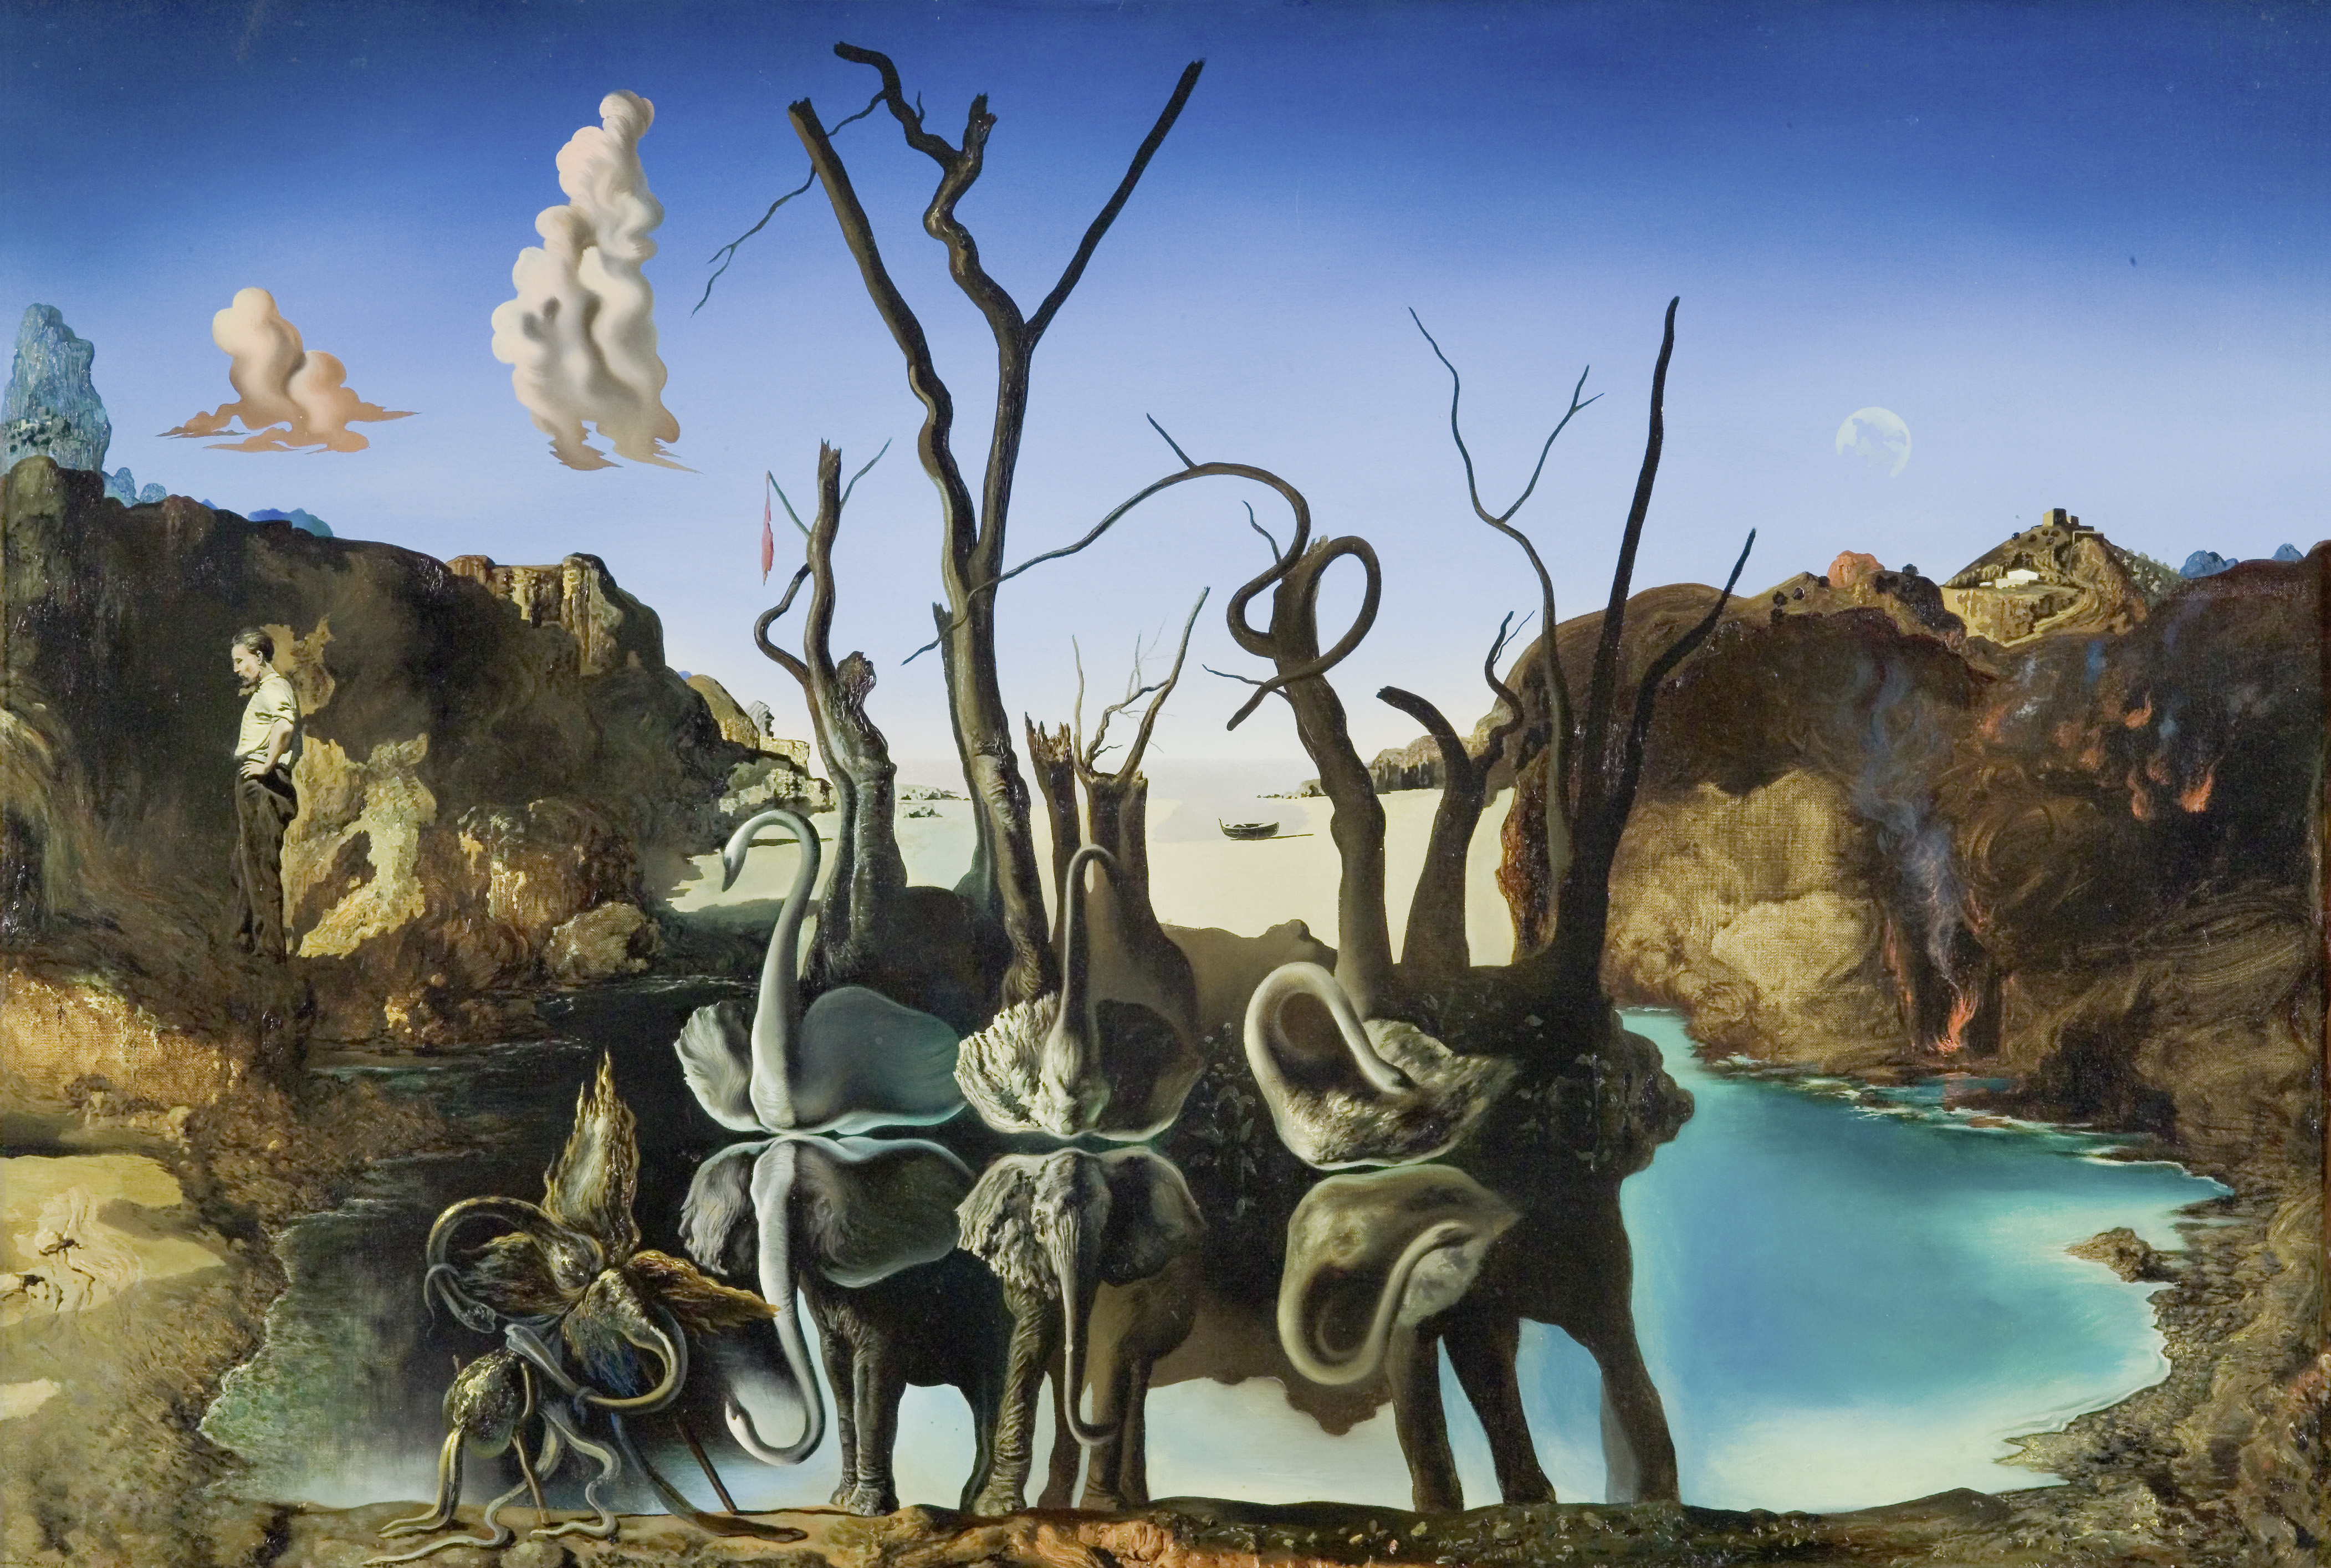 لوحة "البجعات انعكاس الفيلة" (Cygnes reflétant des éléphants) لسلفادور دالي، 1937، متحف الفنون الجميلة بلوزان (MCBA).